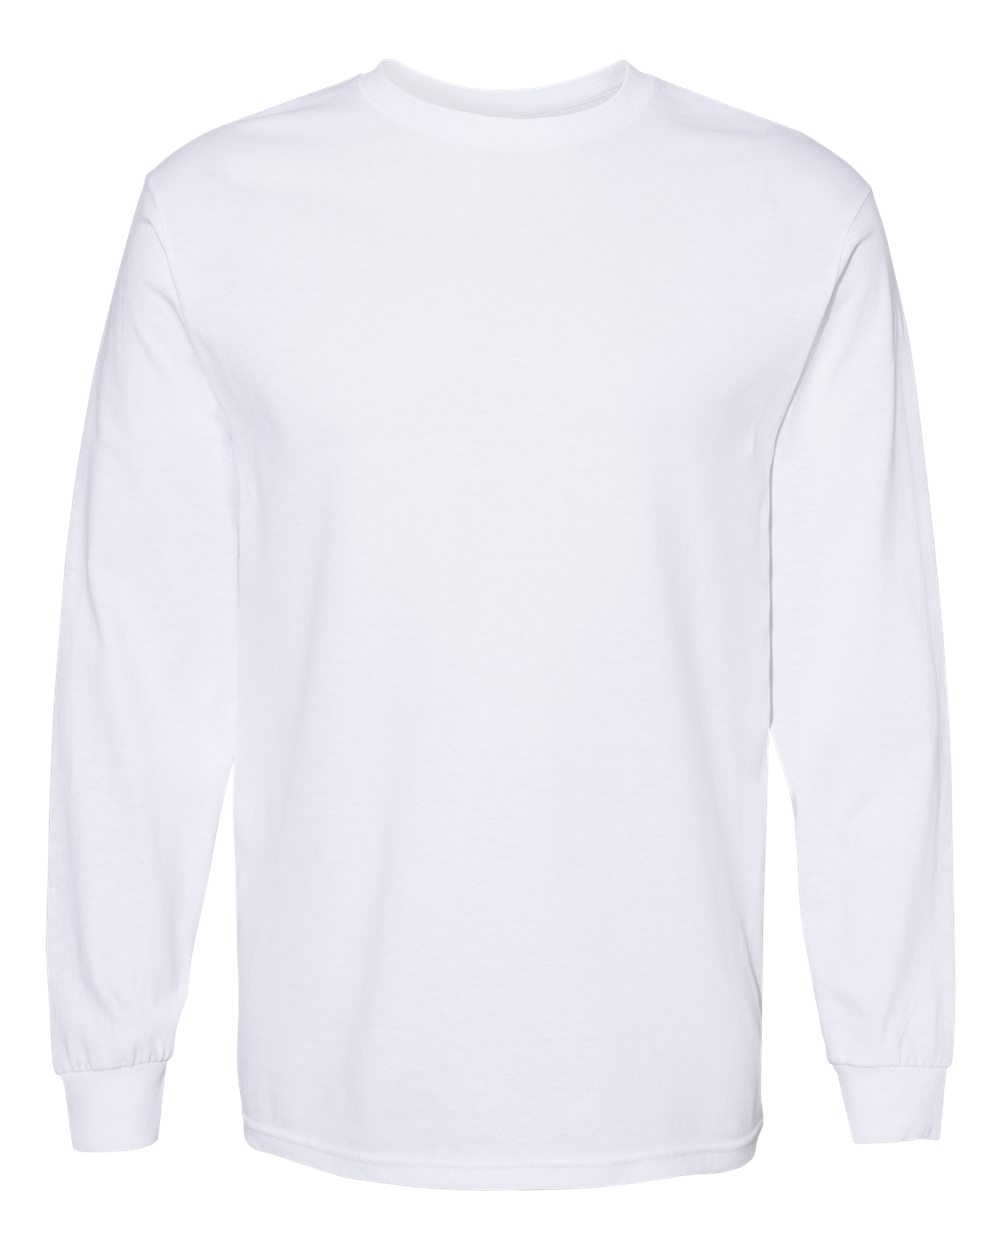 Long Sleeve T-shirts - Men's & Women's